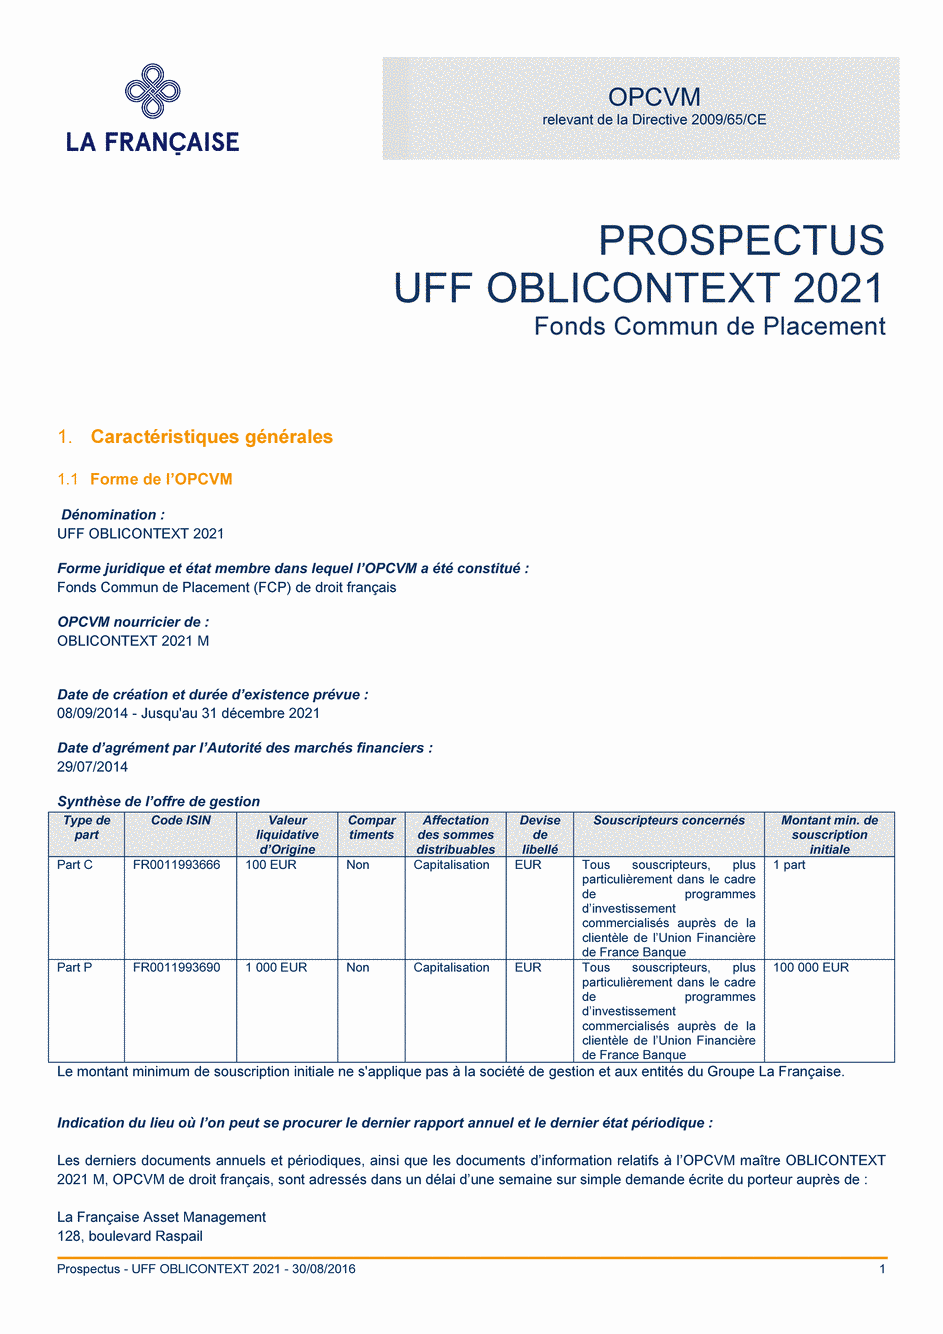 Prospectus UFF OBLICONTEXT 2021 - Part C - 30/08/2016 - Français